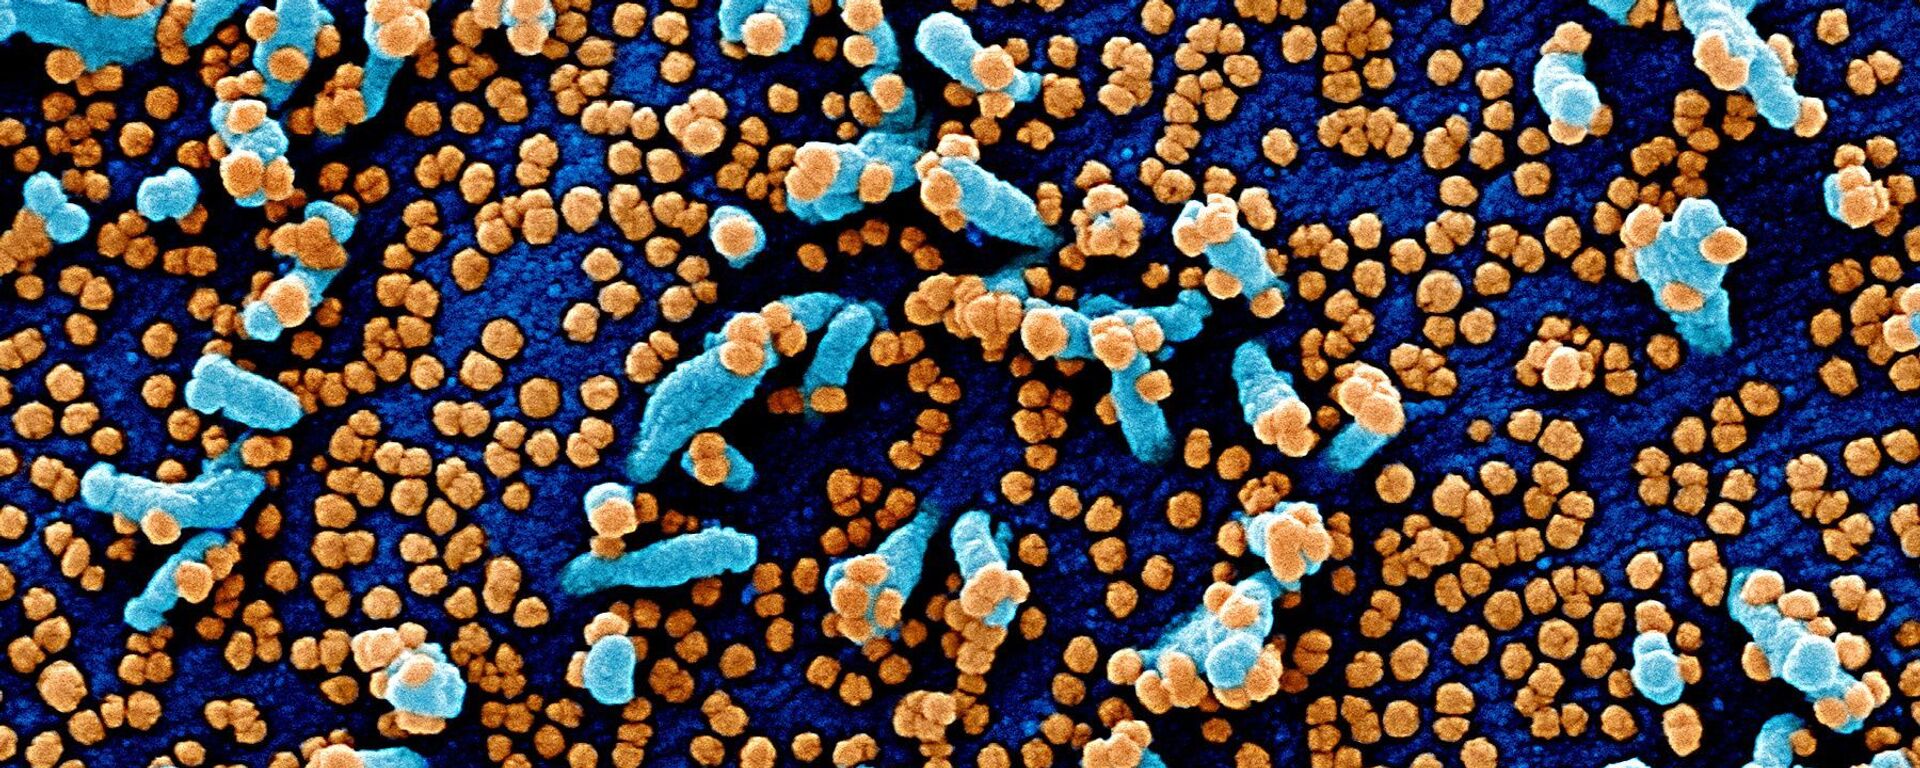 مسح إلكتروني مصغر لخلية فيرو (خلايا توجد في الكلى، باللون الأزرق) مصابة بجزيئات من الفيروس SARS-COV-2 (باللون البرتقالي)، والمعروفة أيضًا باسم كورونا، تم أخذها كعينة من مريض. تم التقاط الصورة في مركز للأبحاث في فورت ديتريك بولاية ماريلاند الأمريكية. - سبوتنيك عربي, 1920, 20.04.2023